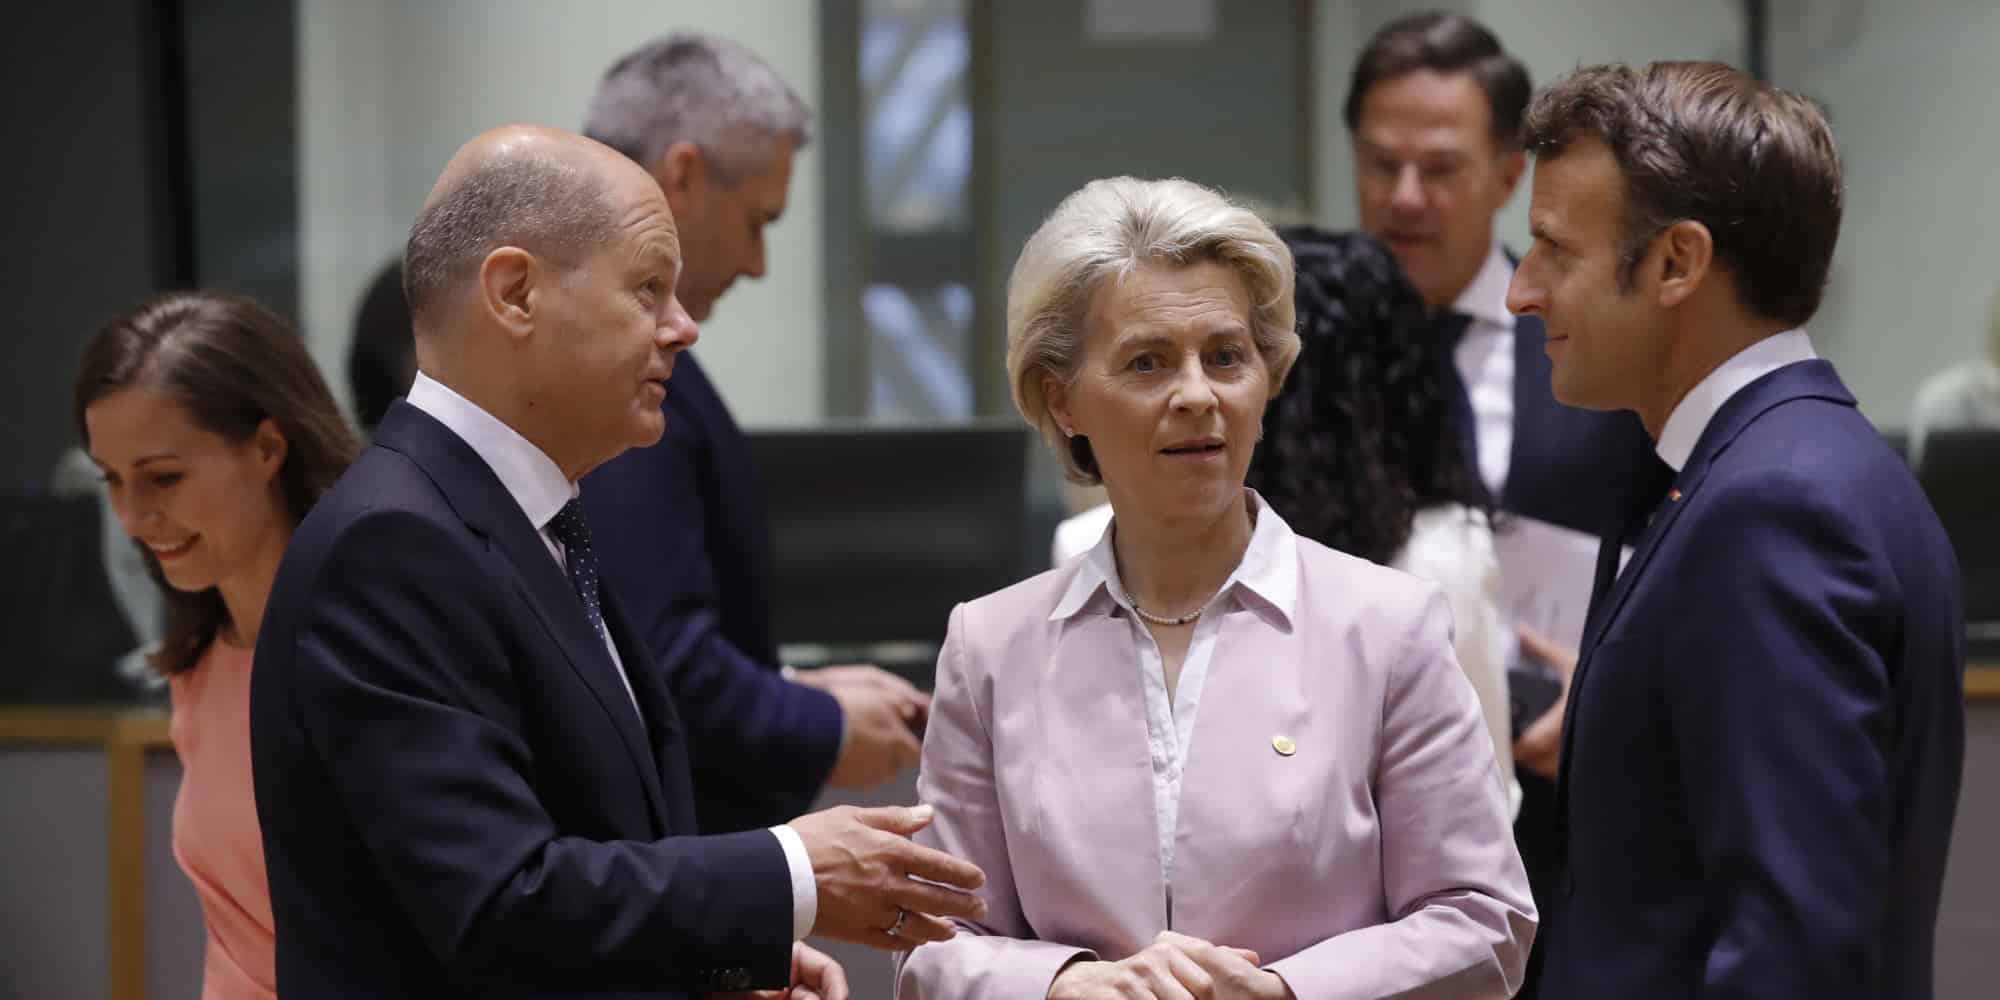 Οι Ευρωπαίοι ηγέτες στη Σύνοδο Κορυφής ΕΕ-Δ .Βαλκανίων